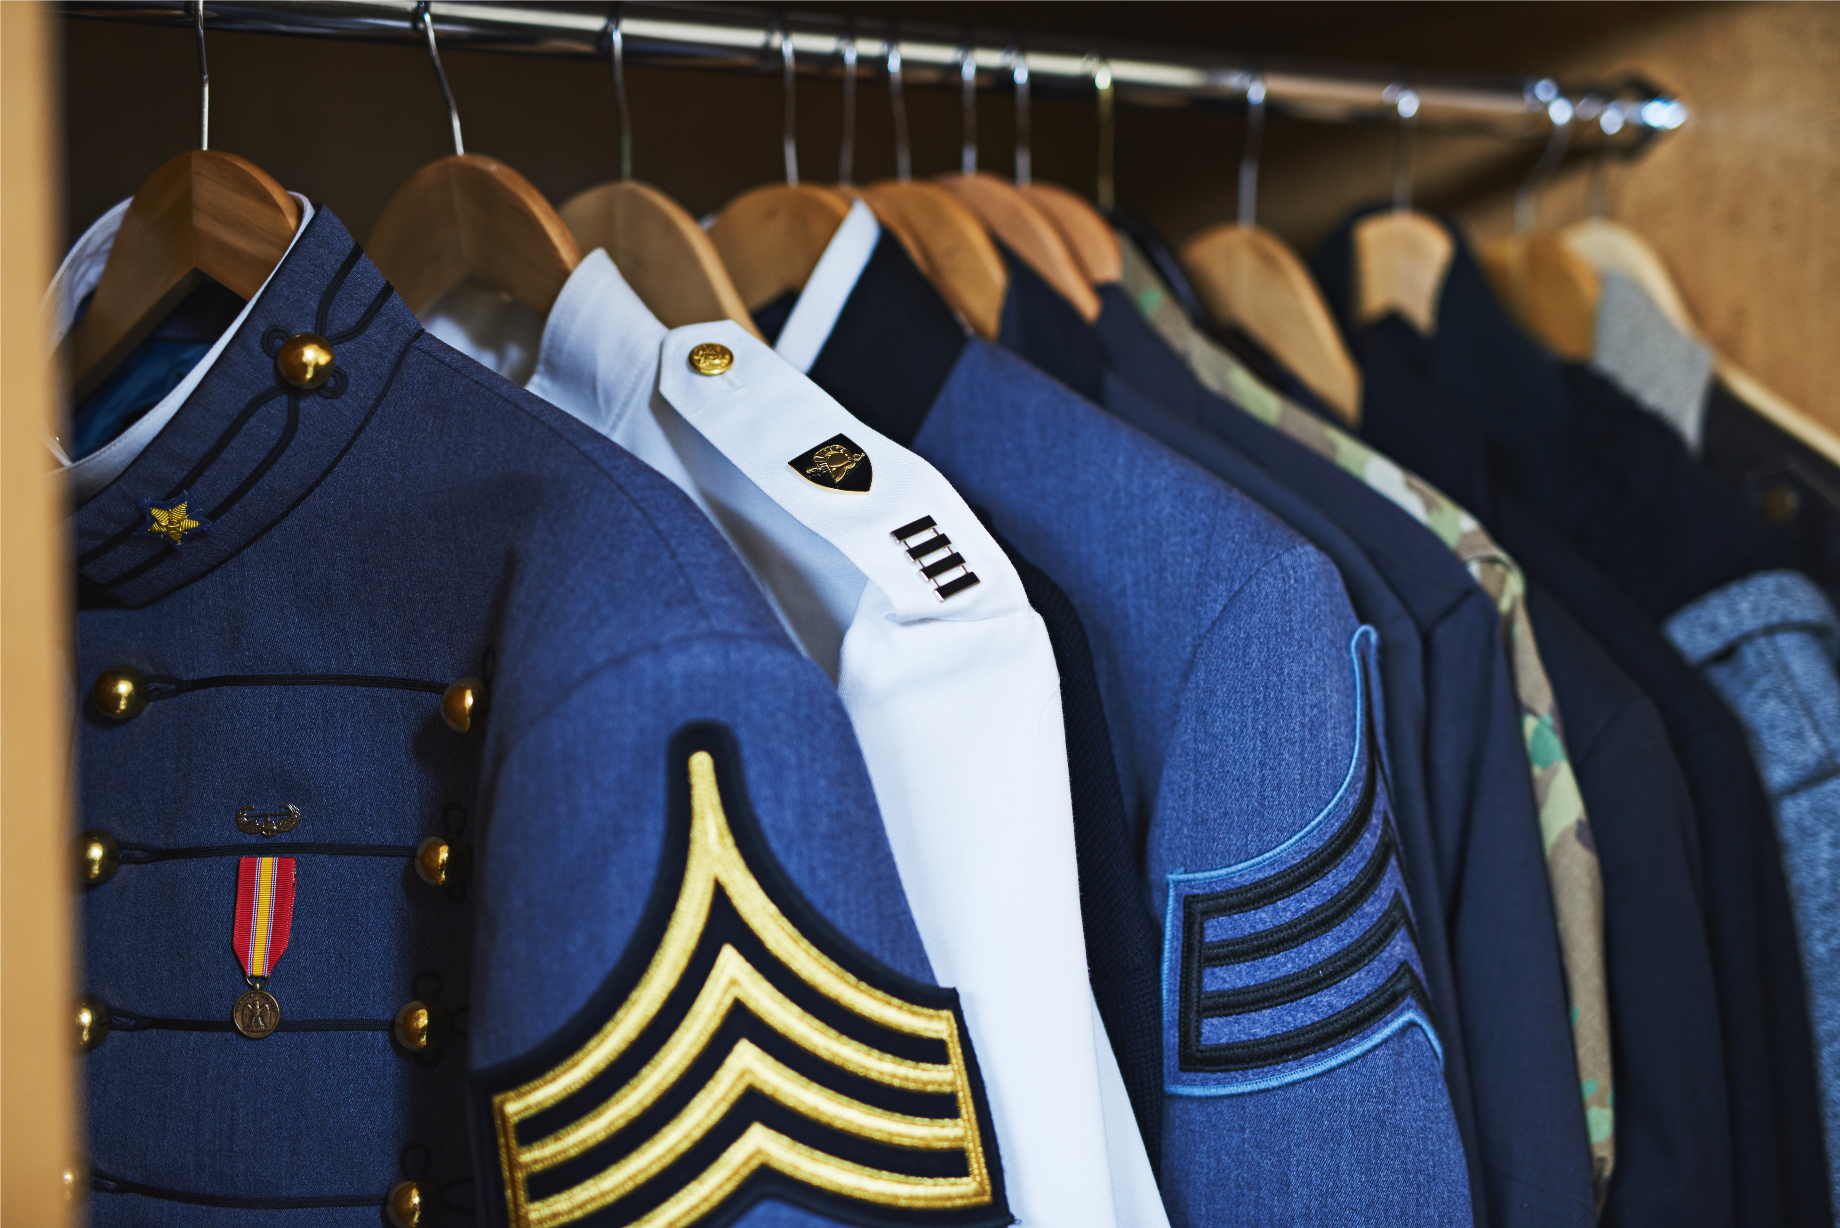 Veterans Request | military uniforms hanging in closet